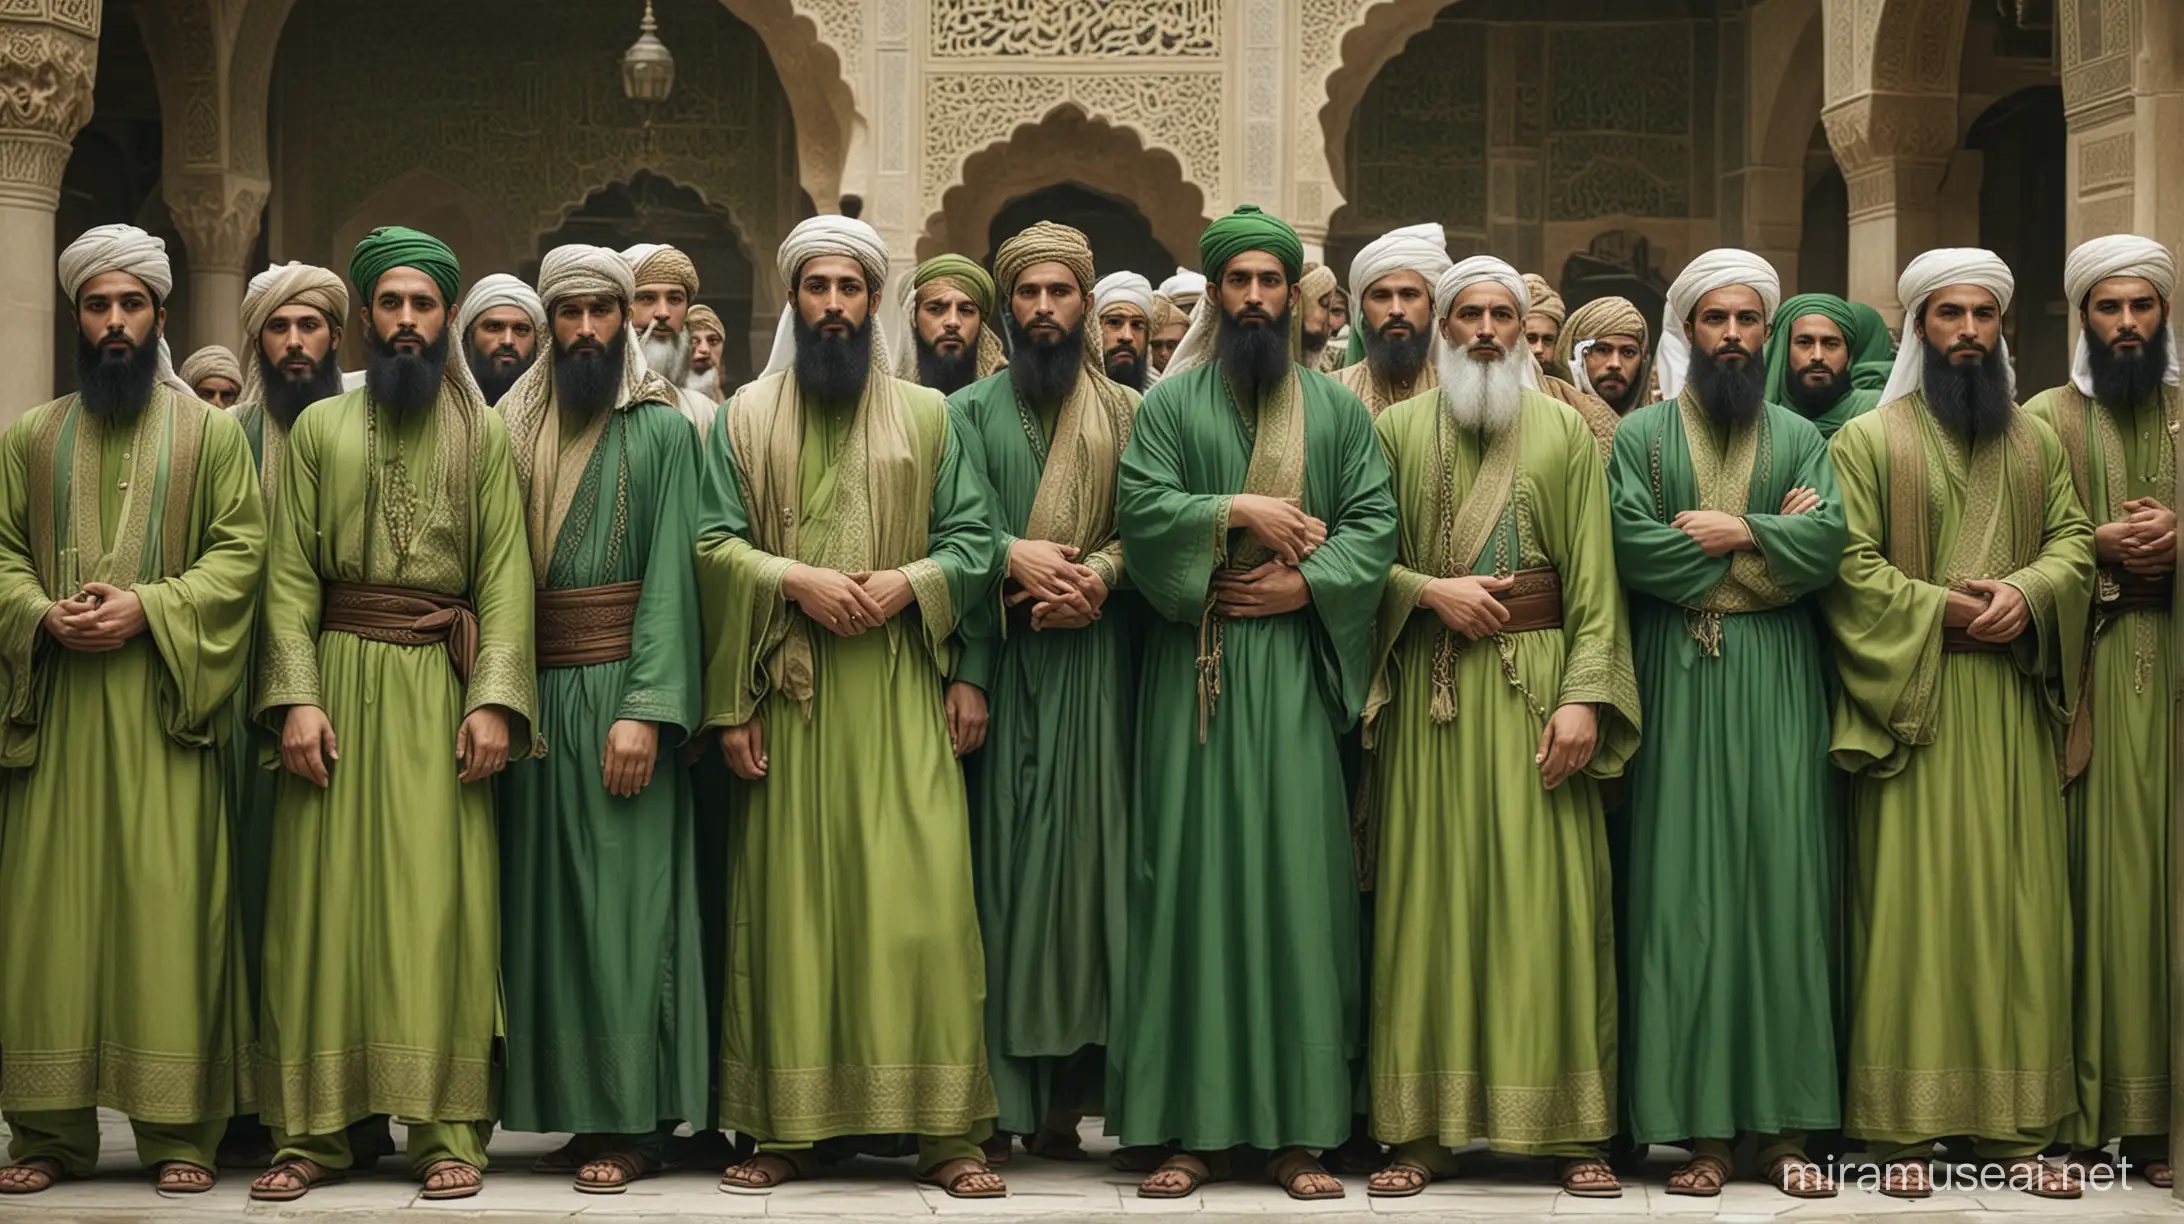 Twelve Muslim Caliphs Wearing Traditional Green Garments